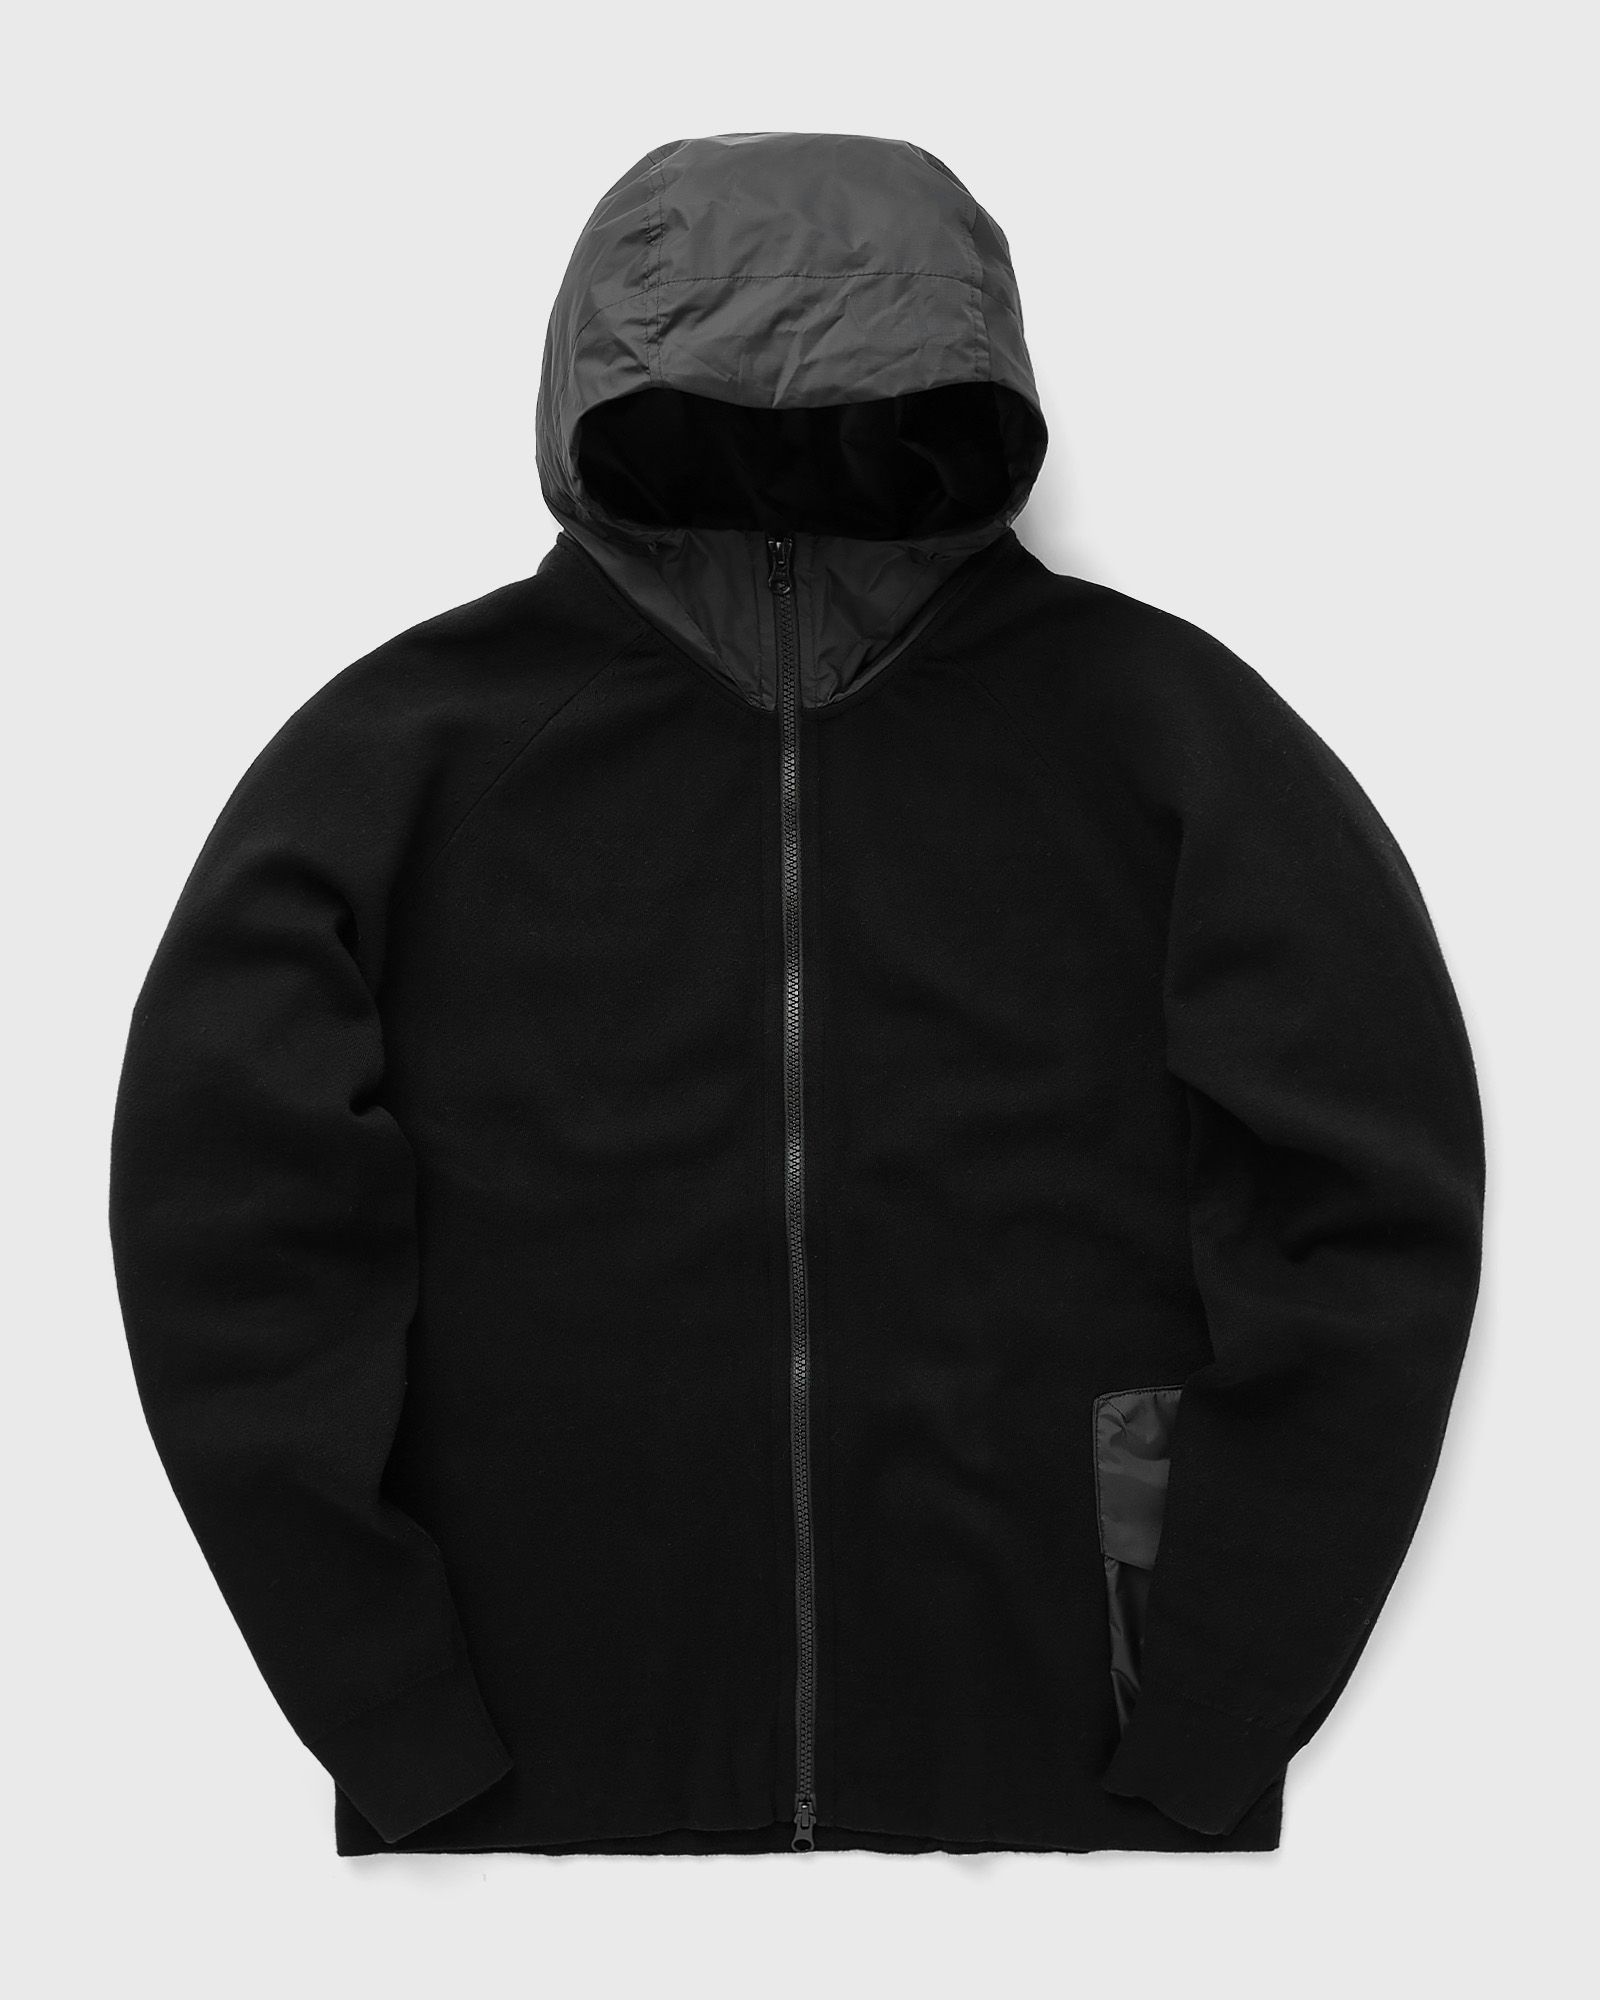 C.P. Company - metropolis series double mixed zipped hoodie men hoodies|zippers black in größe:xl